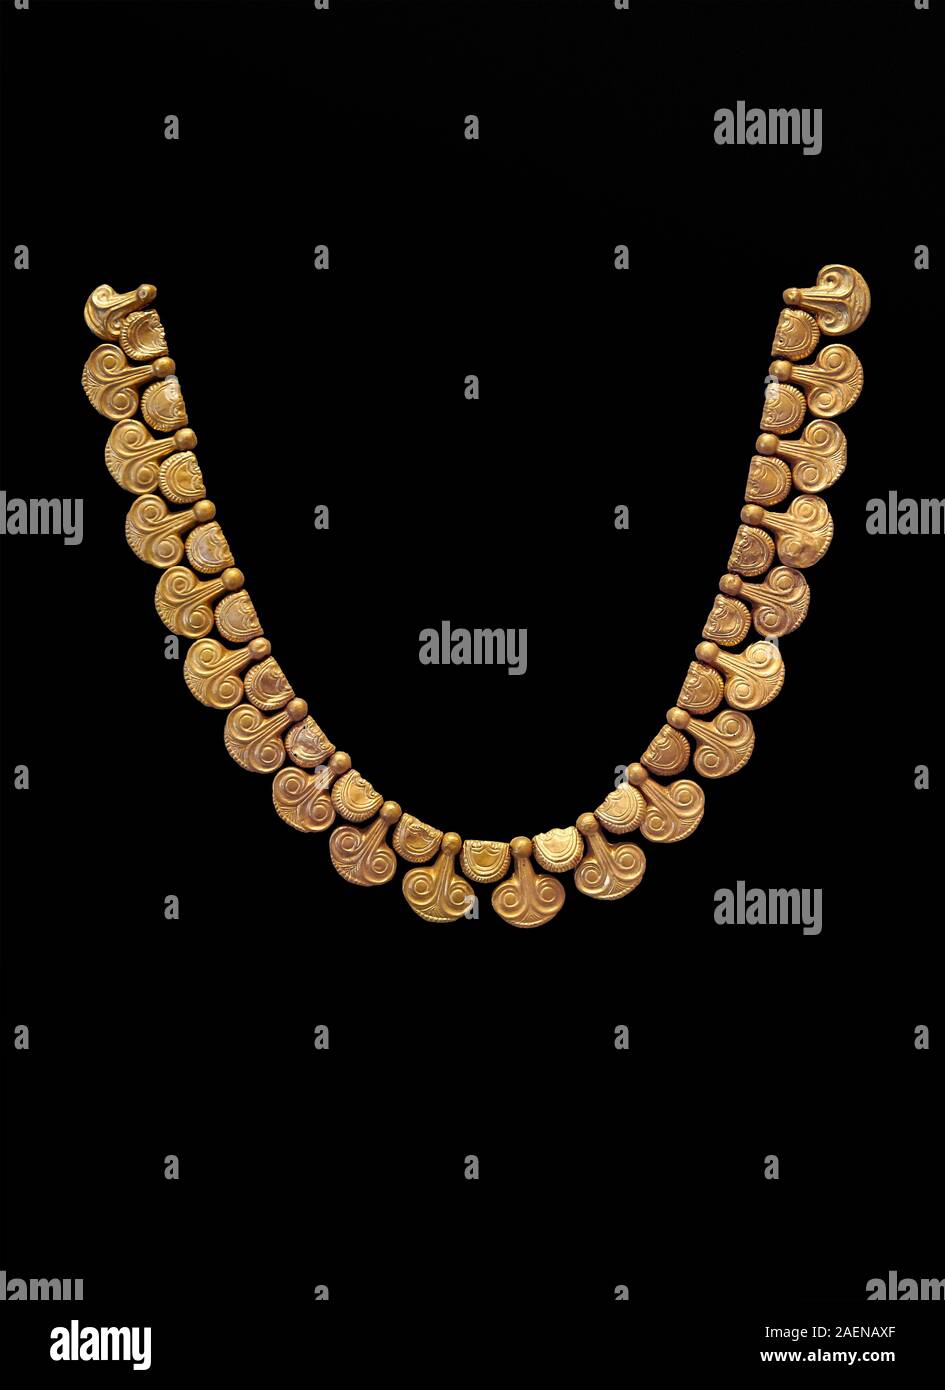 Micenea collana in oro con waz giglio talloni sagomati dal cimitero micenea di Midea tomba 10, Dendra, Grecia. Museo Archeologico Nazionale di Atene Foto Stock